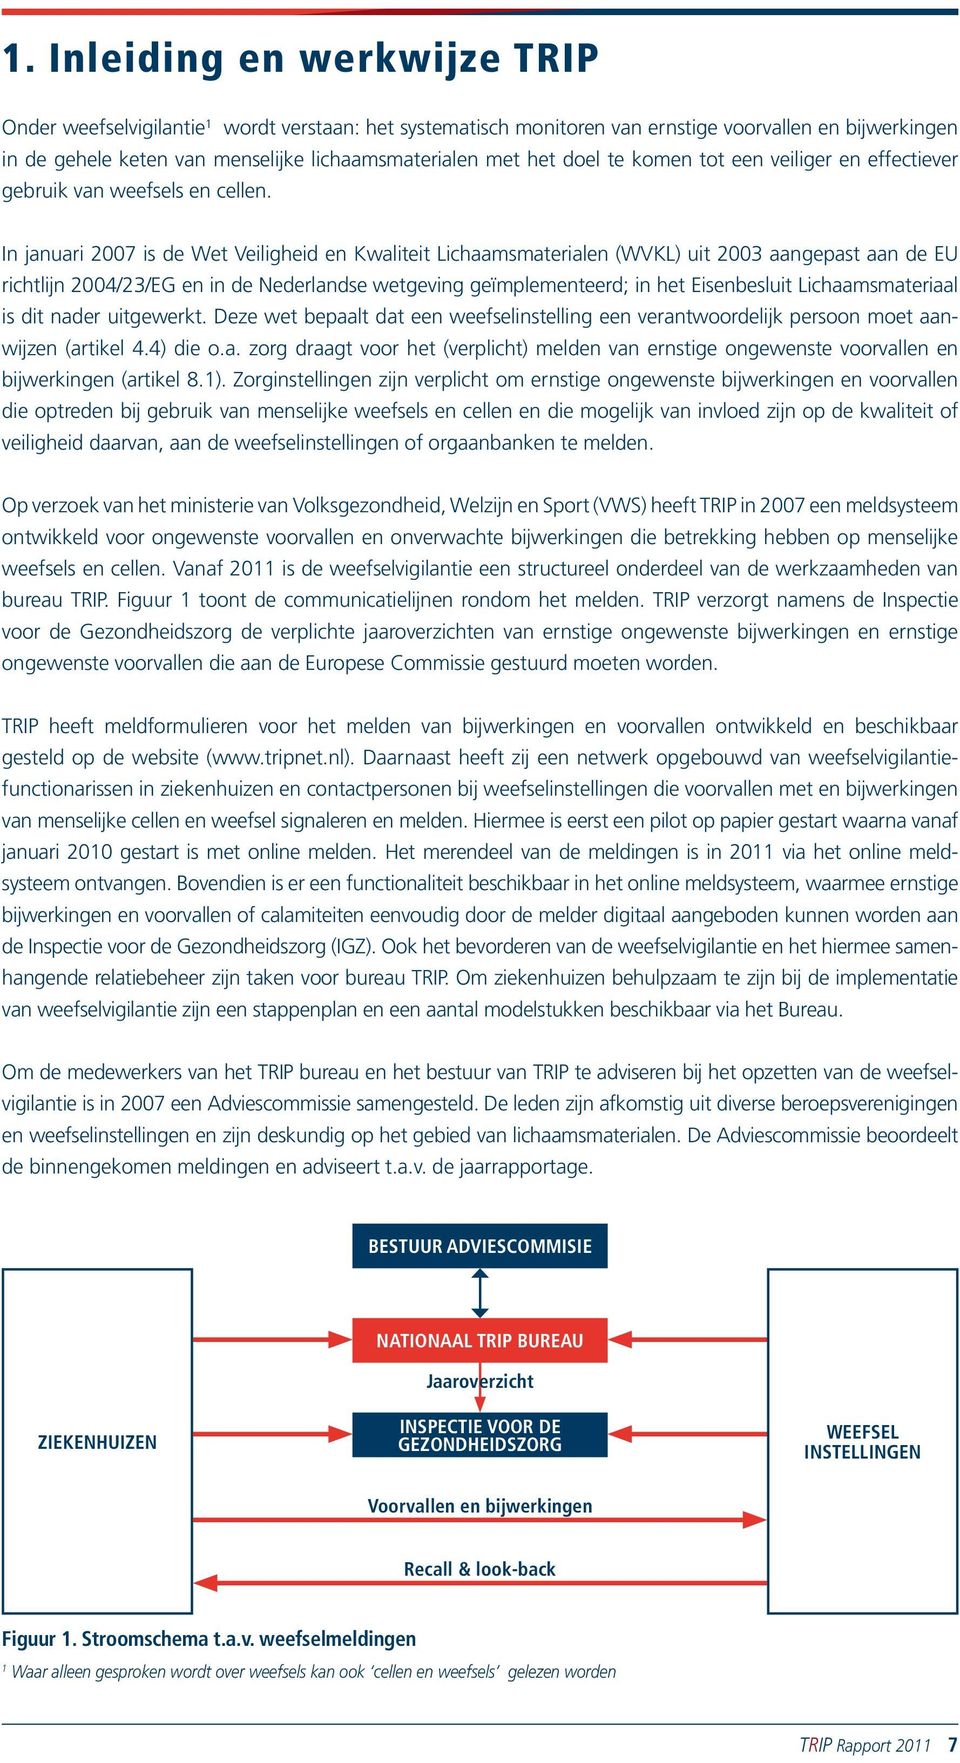 In januari 2007 is de Wet Veiligheid en Kwaliteit Lichaamsmaterialen (WVKL) uit 2003 aangepast aan de EU richtlijn 2004/23/EG en in de Nederlandse wetgeving geïmplementeerd; in het Eisenbesluit